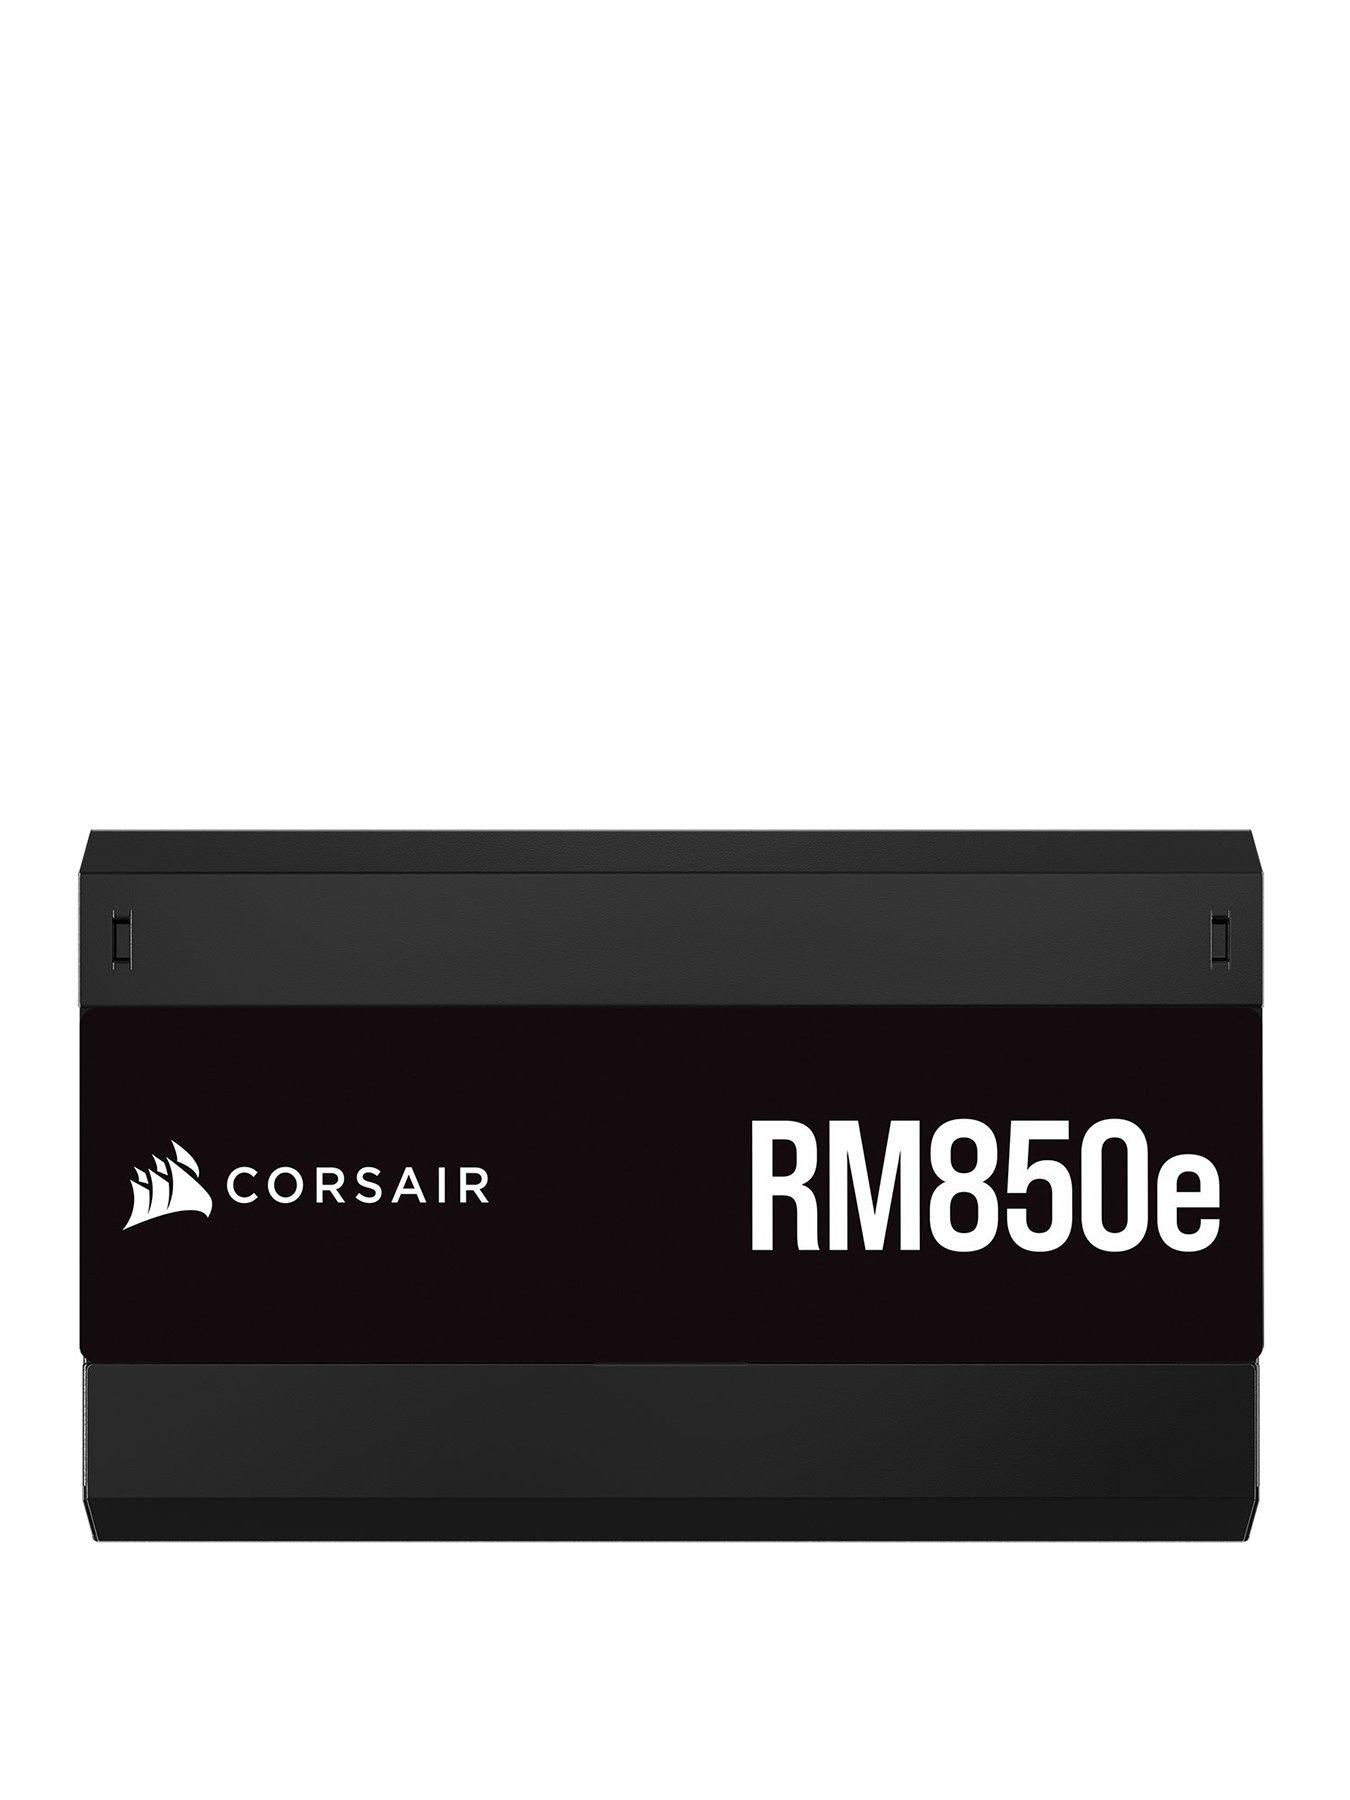 CORSAIR RMe Series, RM850e, 850 Watt Power Supply